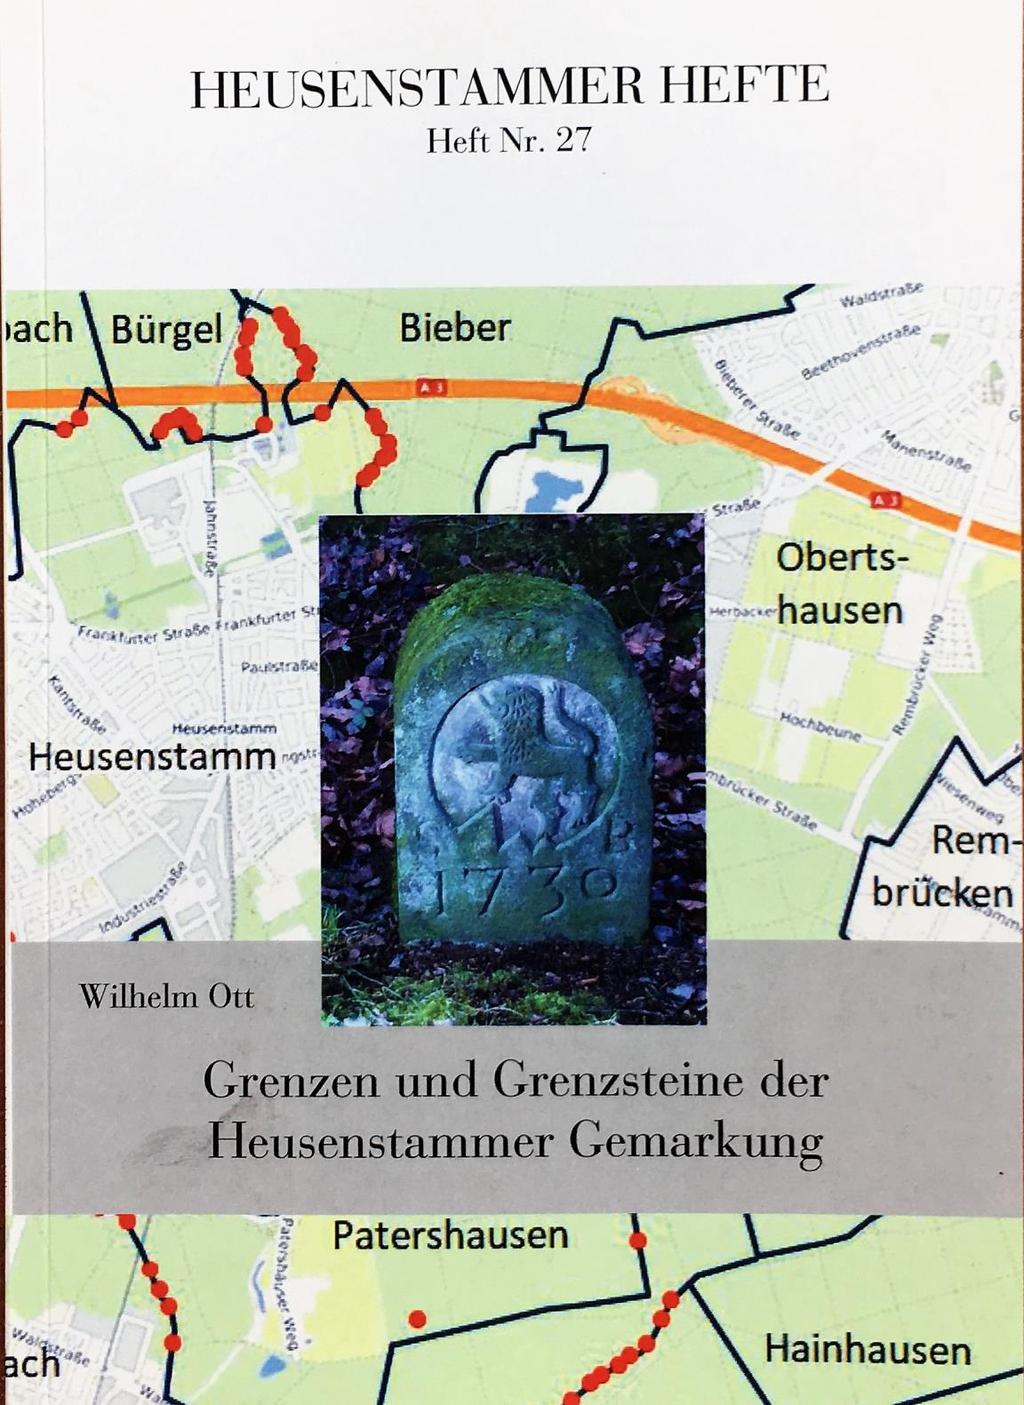 Grenzen und Grenzsteine der Heusenstammer Gemarkung Vortrag und